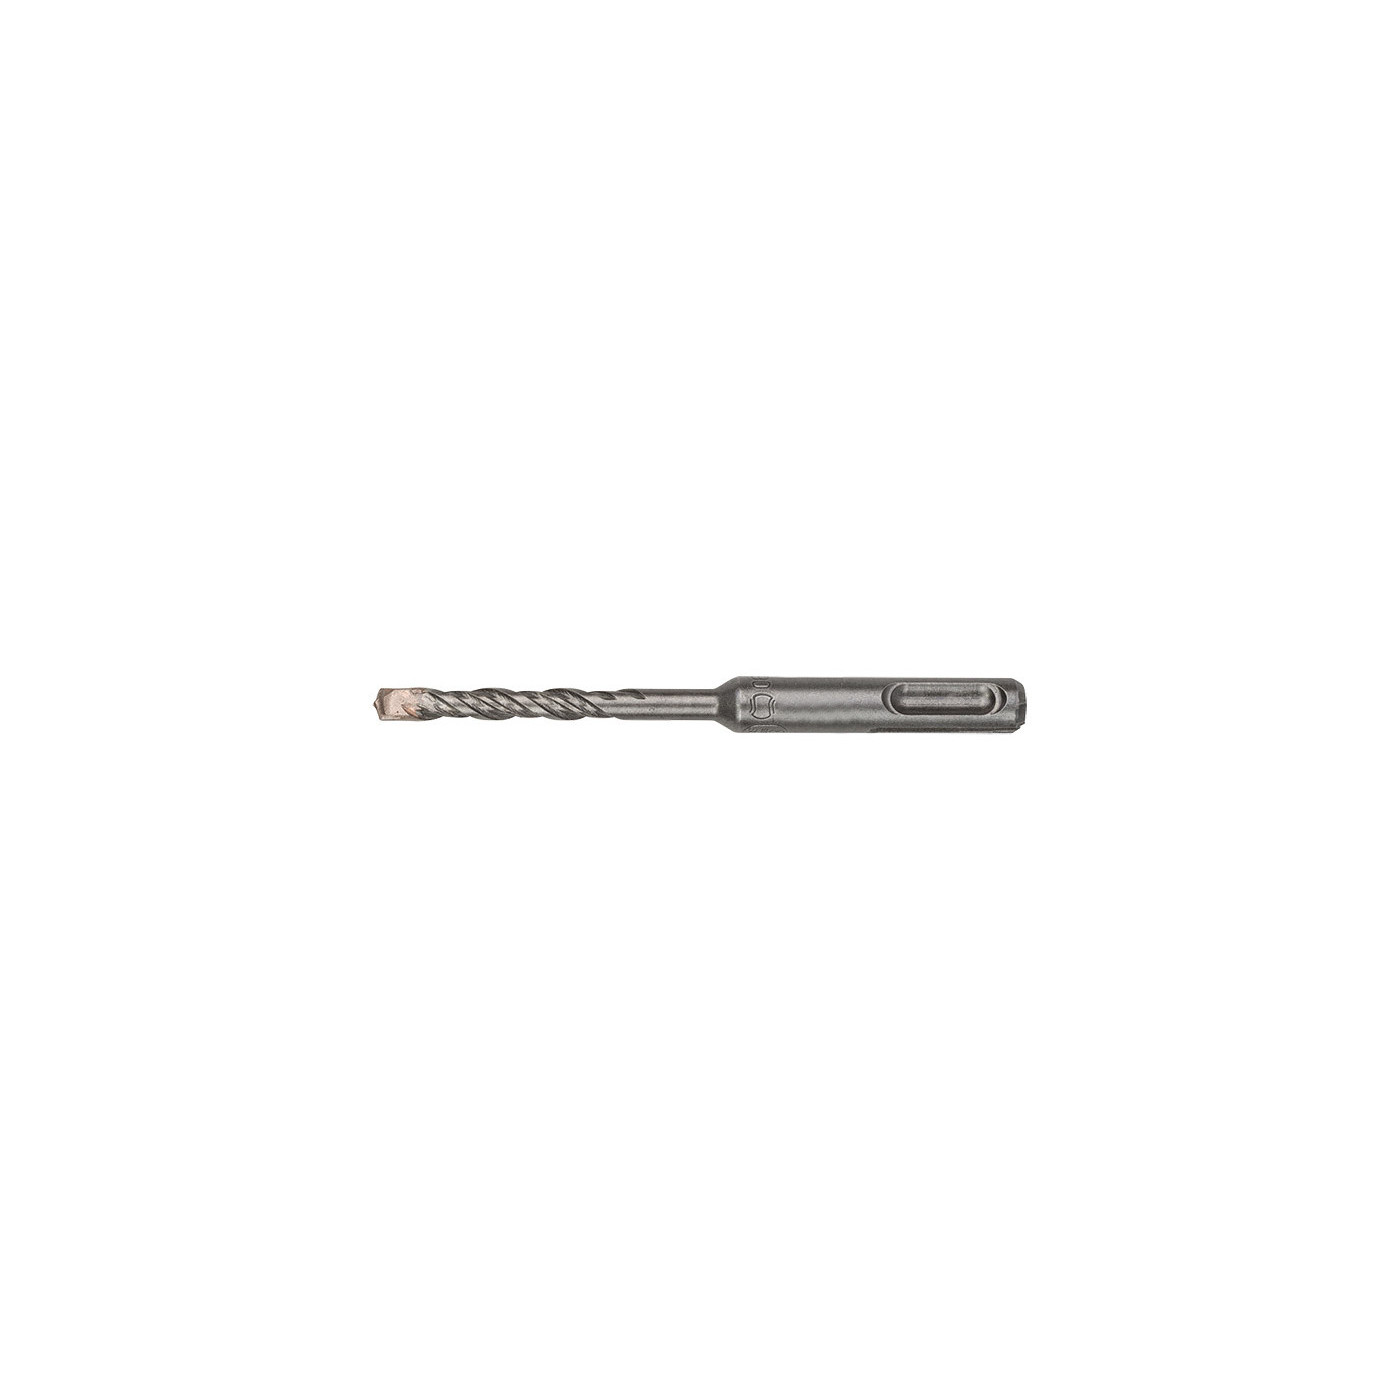 SDS PLUS hammer drill bit (16x160 mm)